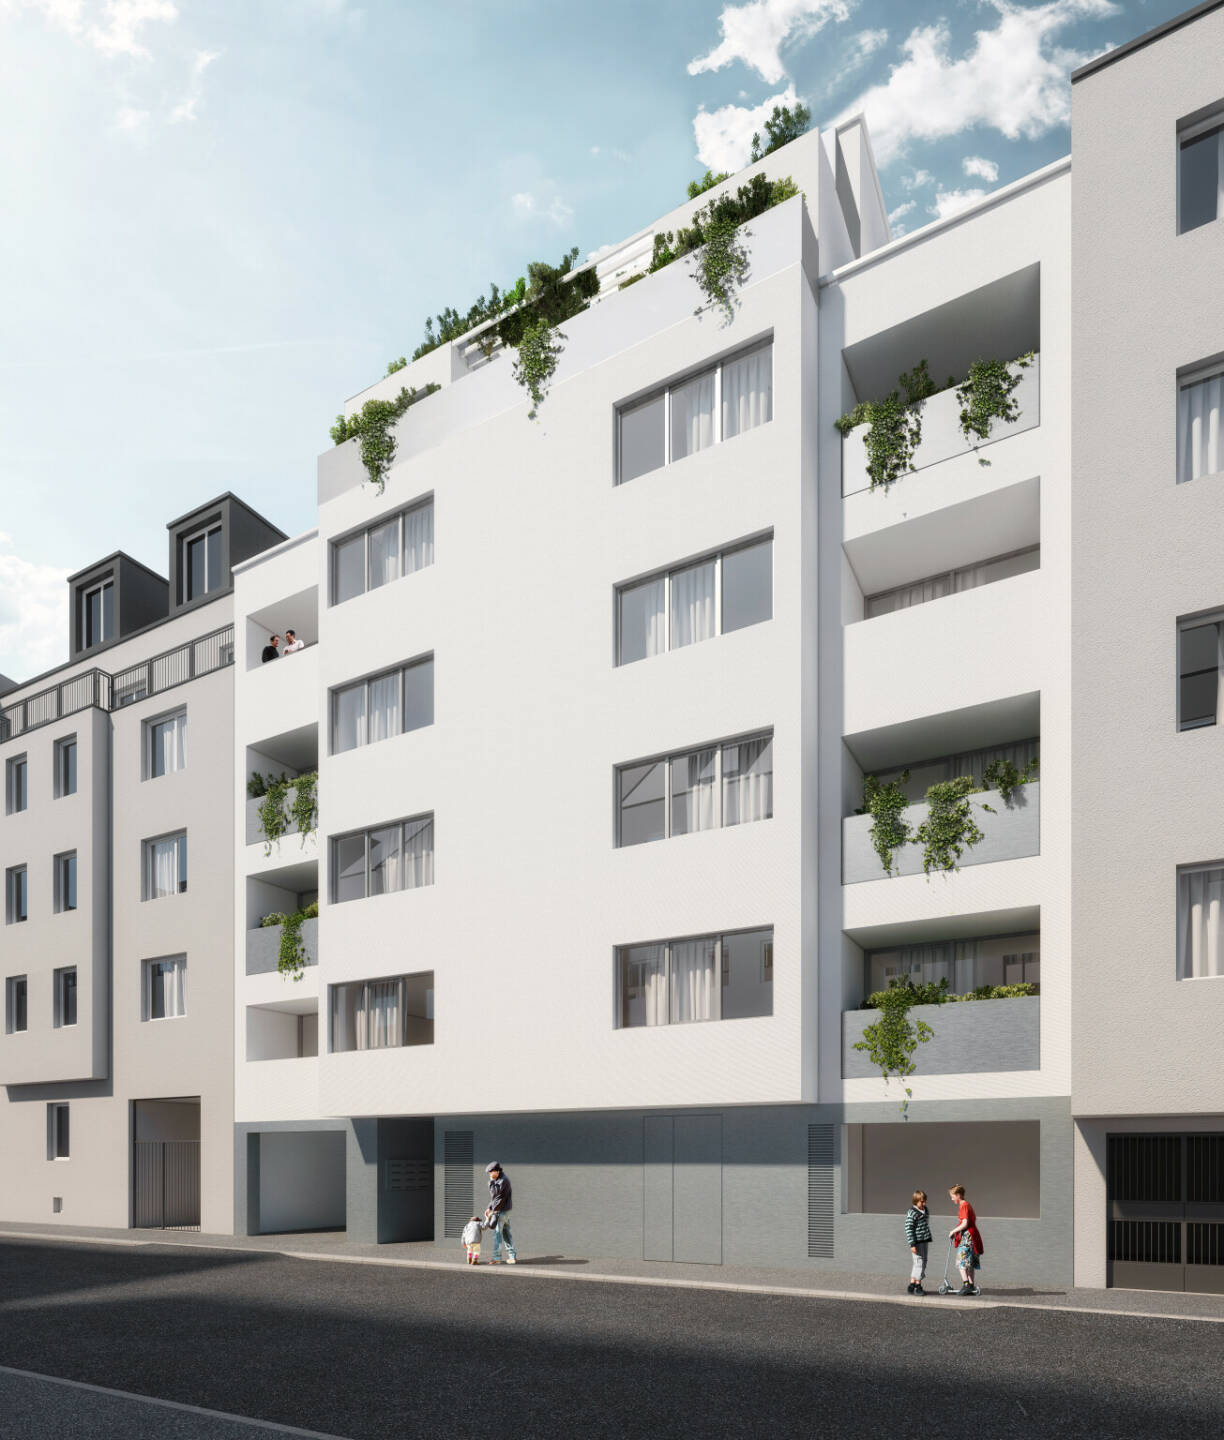 In Kooperation mit der BIP Immobilien Development GmbH startet das neue Projekt der RVW (Raiffeisen Vorsorge Wohnung GmbH) in der Pilzgasse 28 im 21. Wiener Gemeindebezirk. Fotocredit:Expressiv GmbH